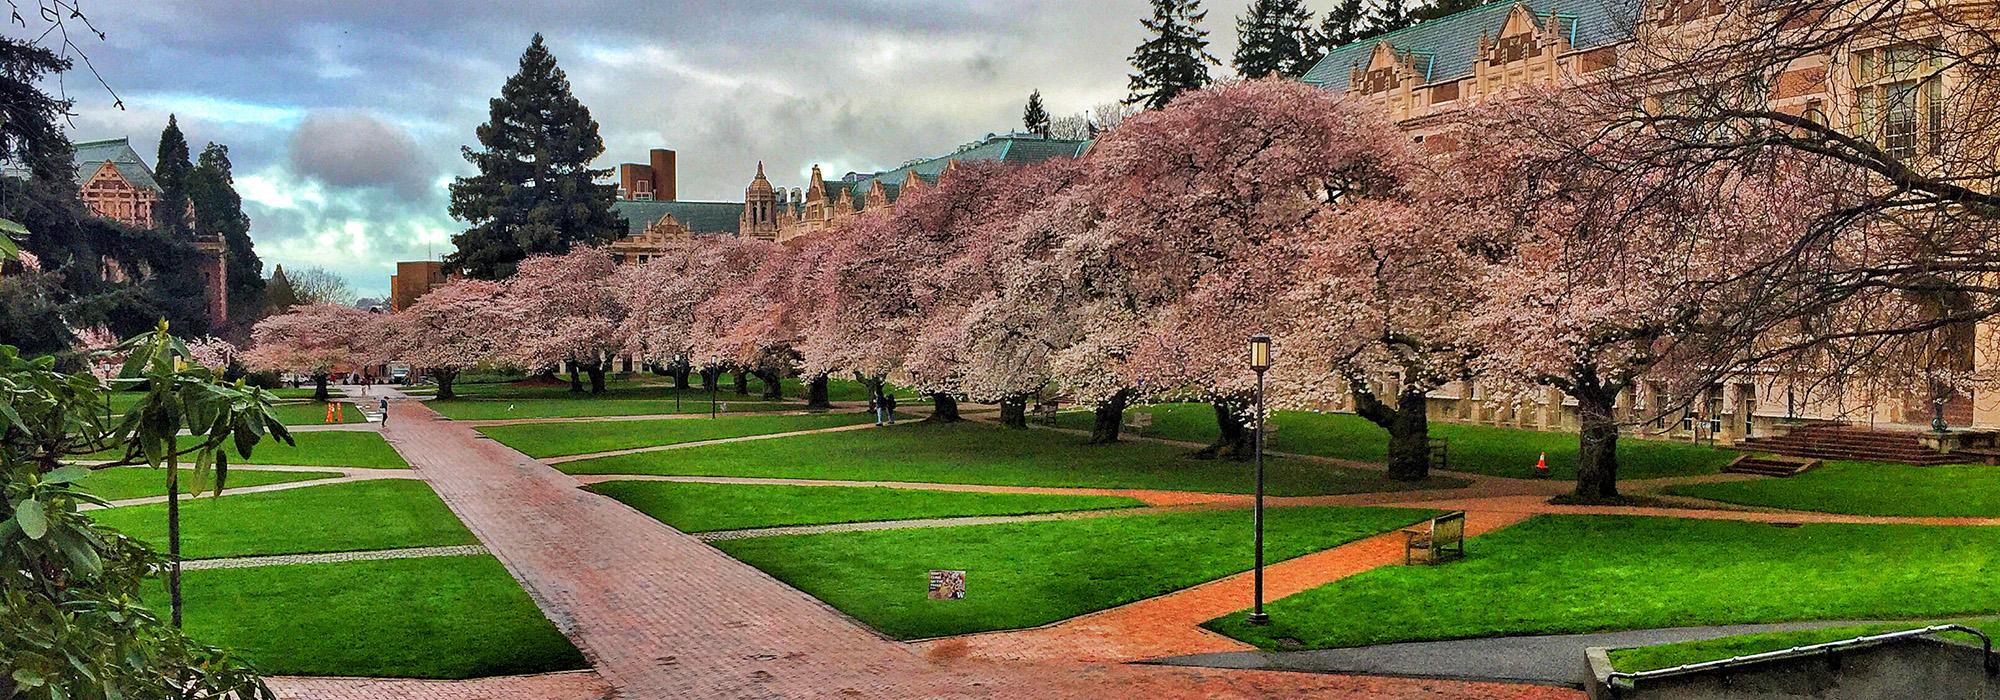 University of Washington, Seattle, WA